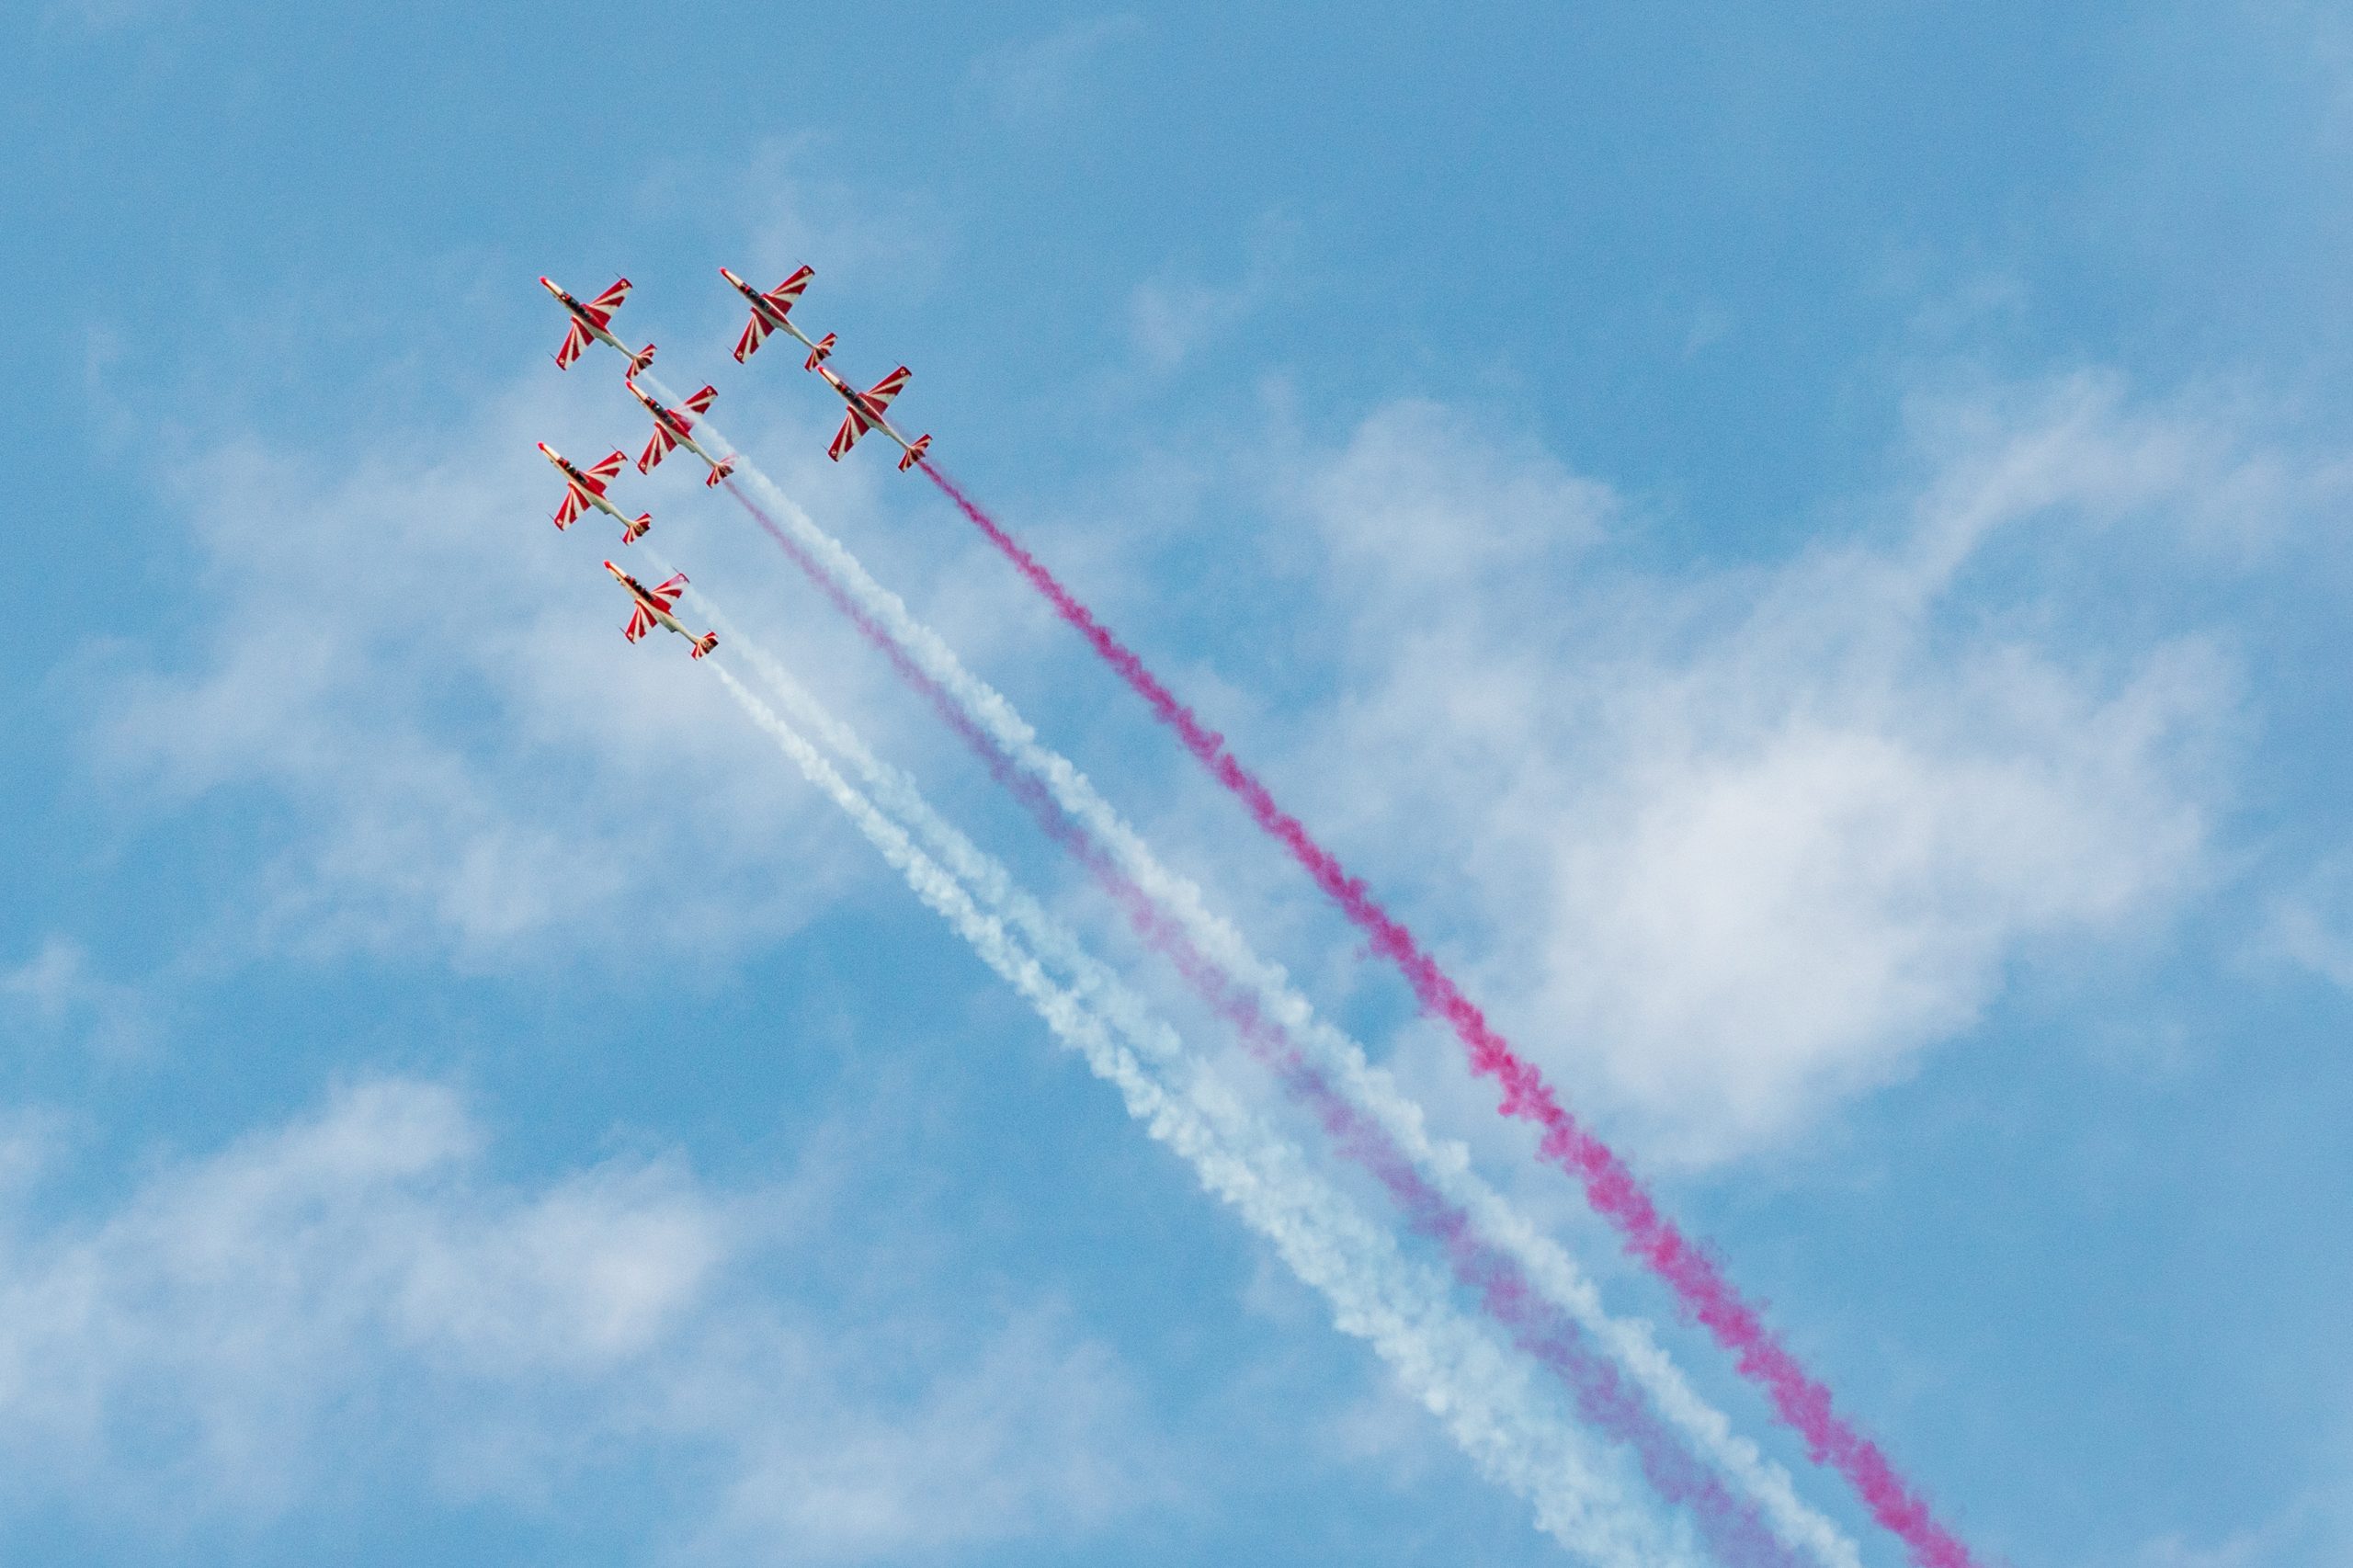 6 biało-czerwonych samolotów lecącą w zwartym szyku, za nimi ciągną się smugi białego i czerwonego dymu.